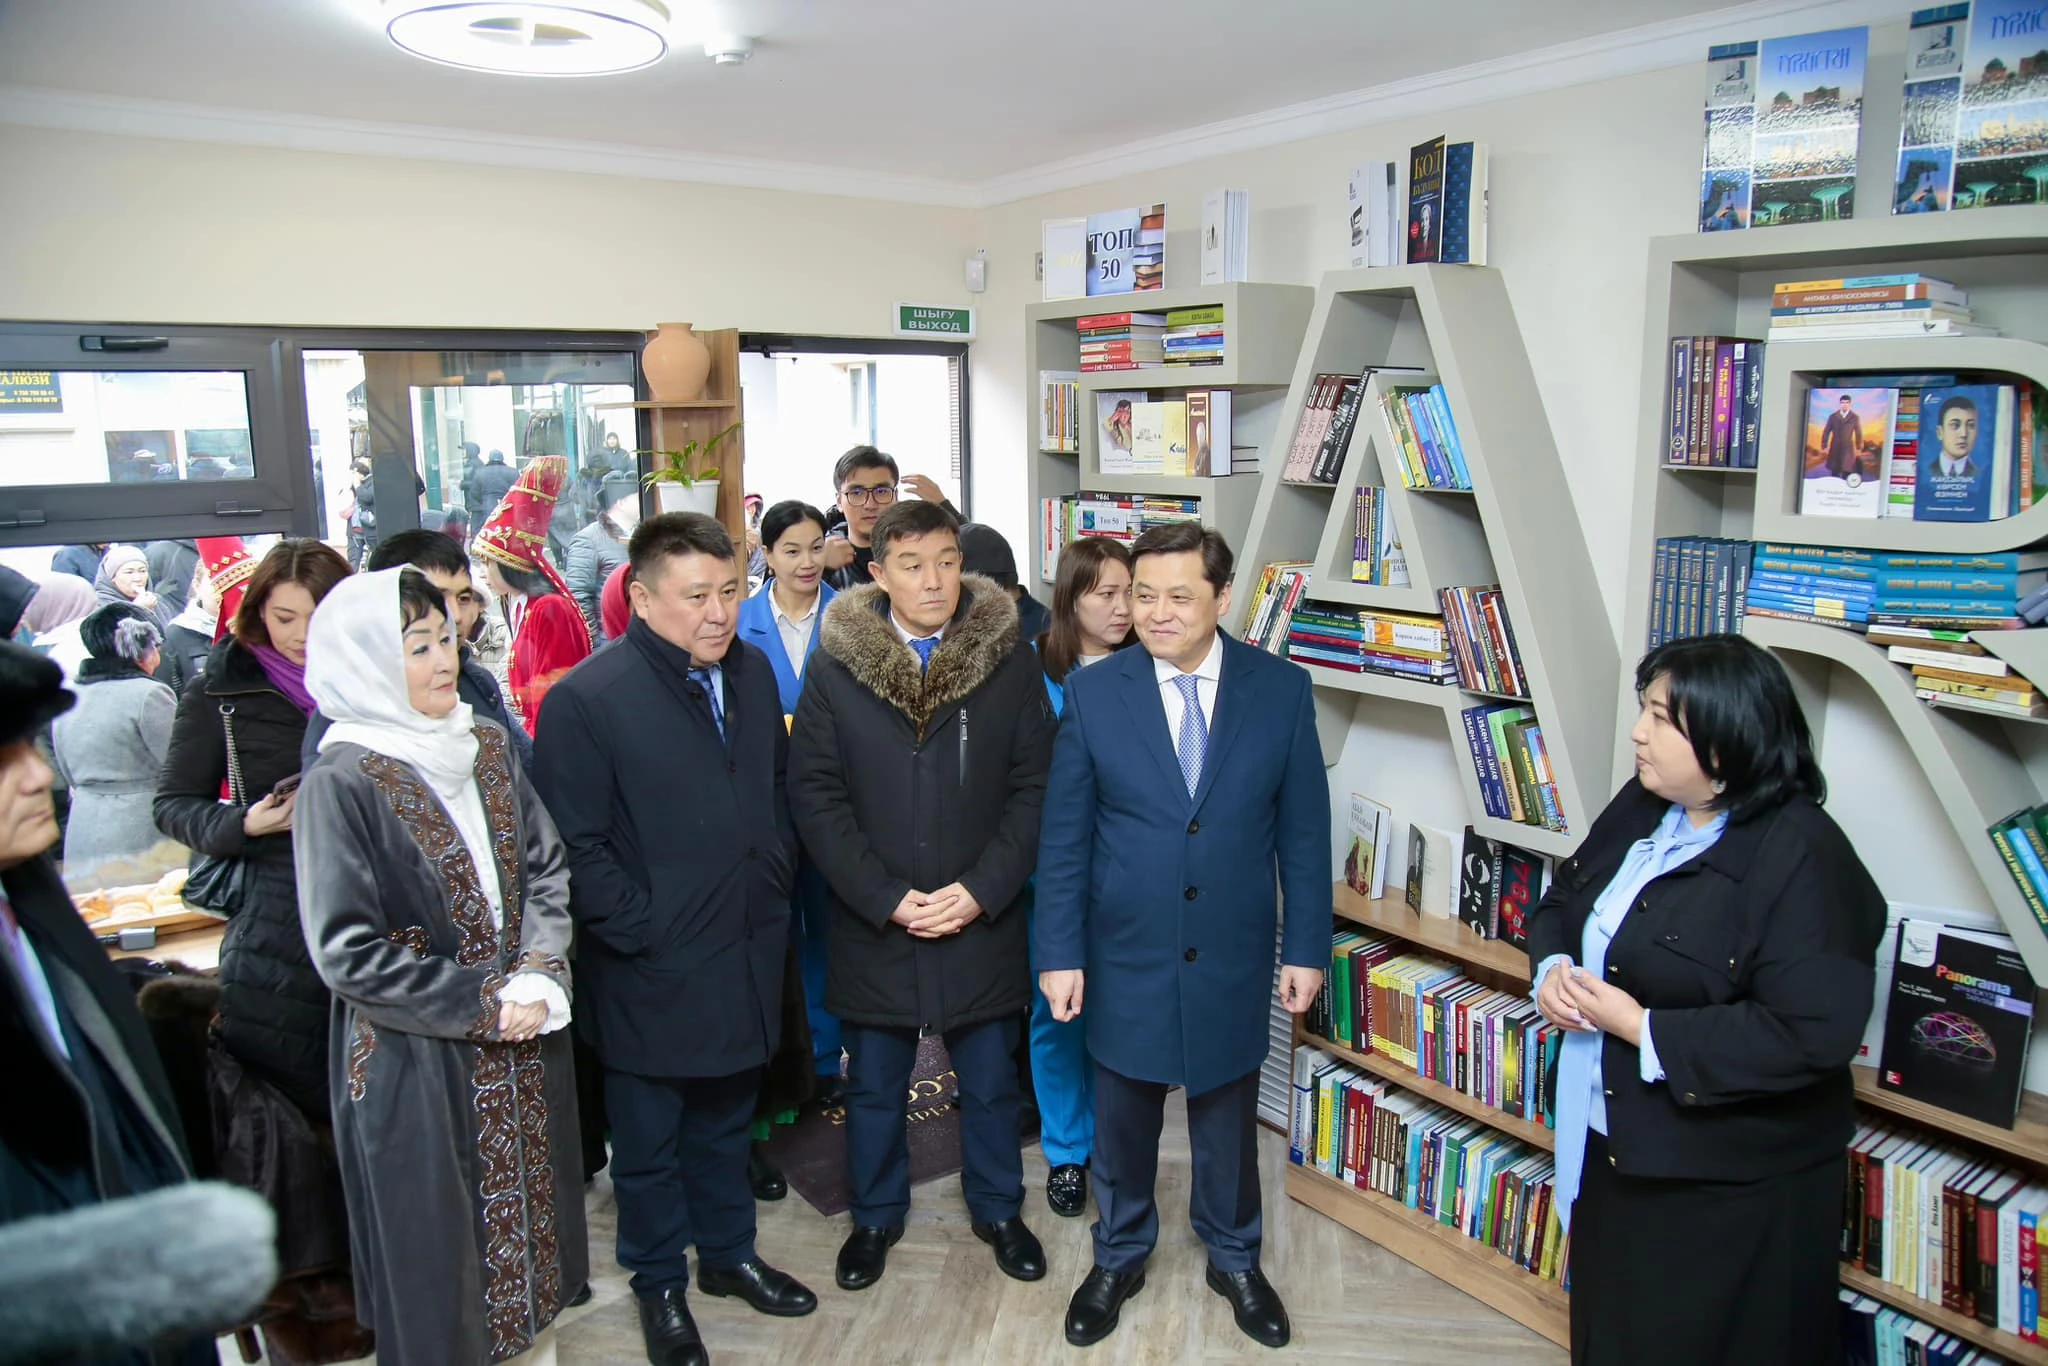 Түркістан облысында «Базардағы кітапхана» жобасы іске асырыла бастады